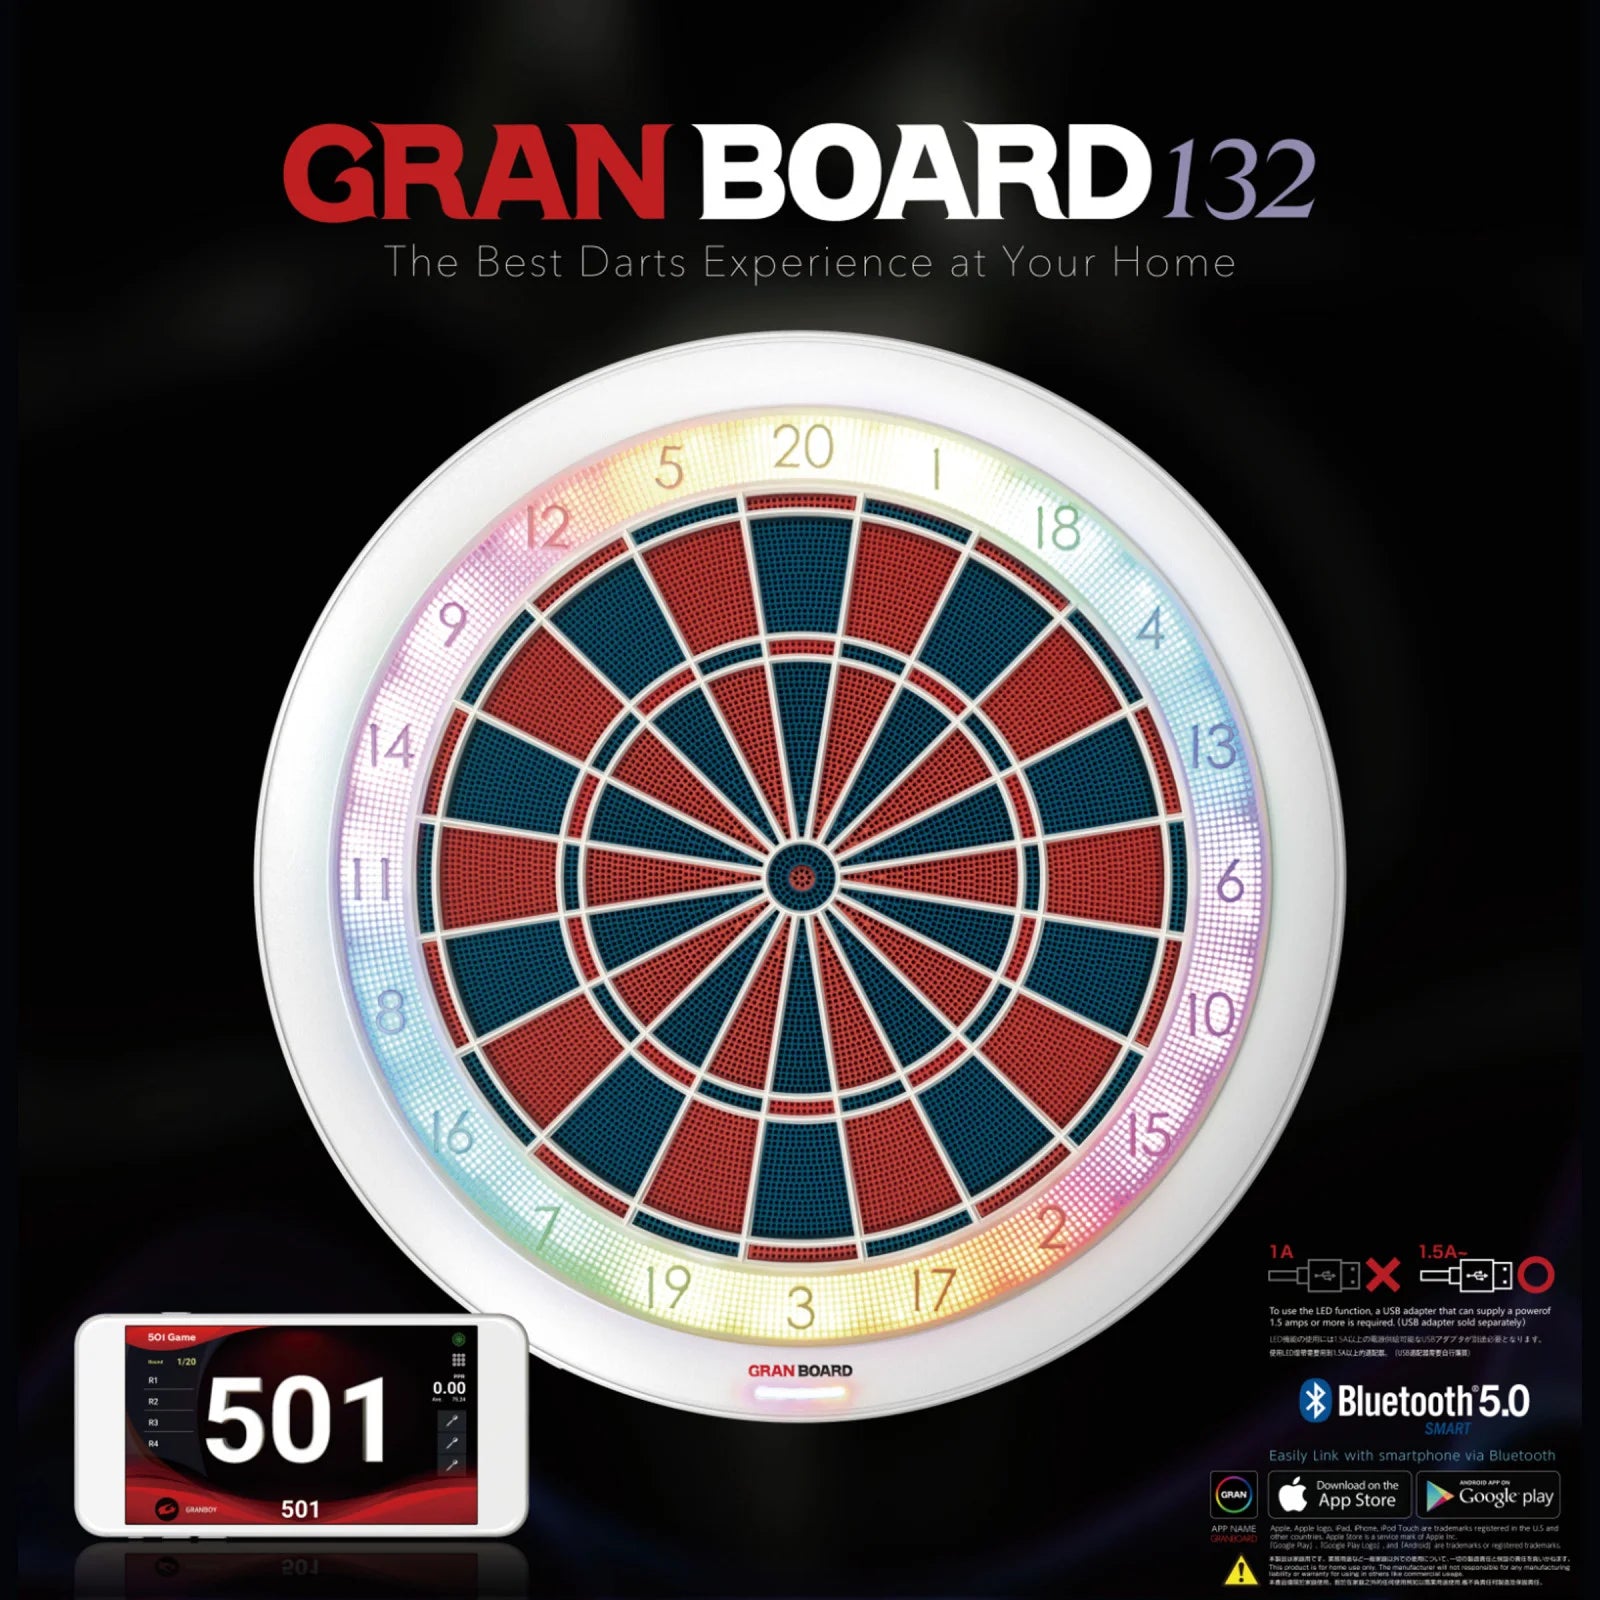 Gran Board 132 Professional Electronic Dart Board